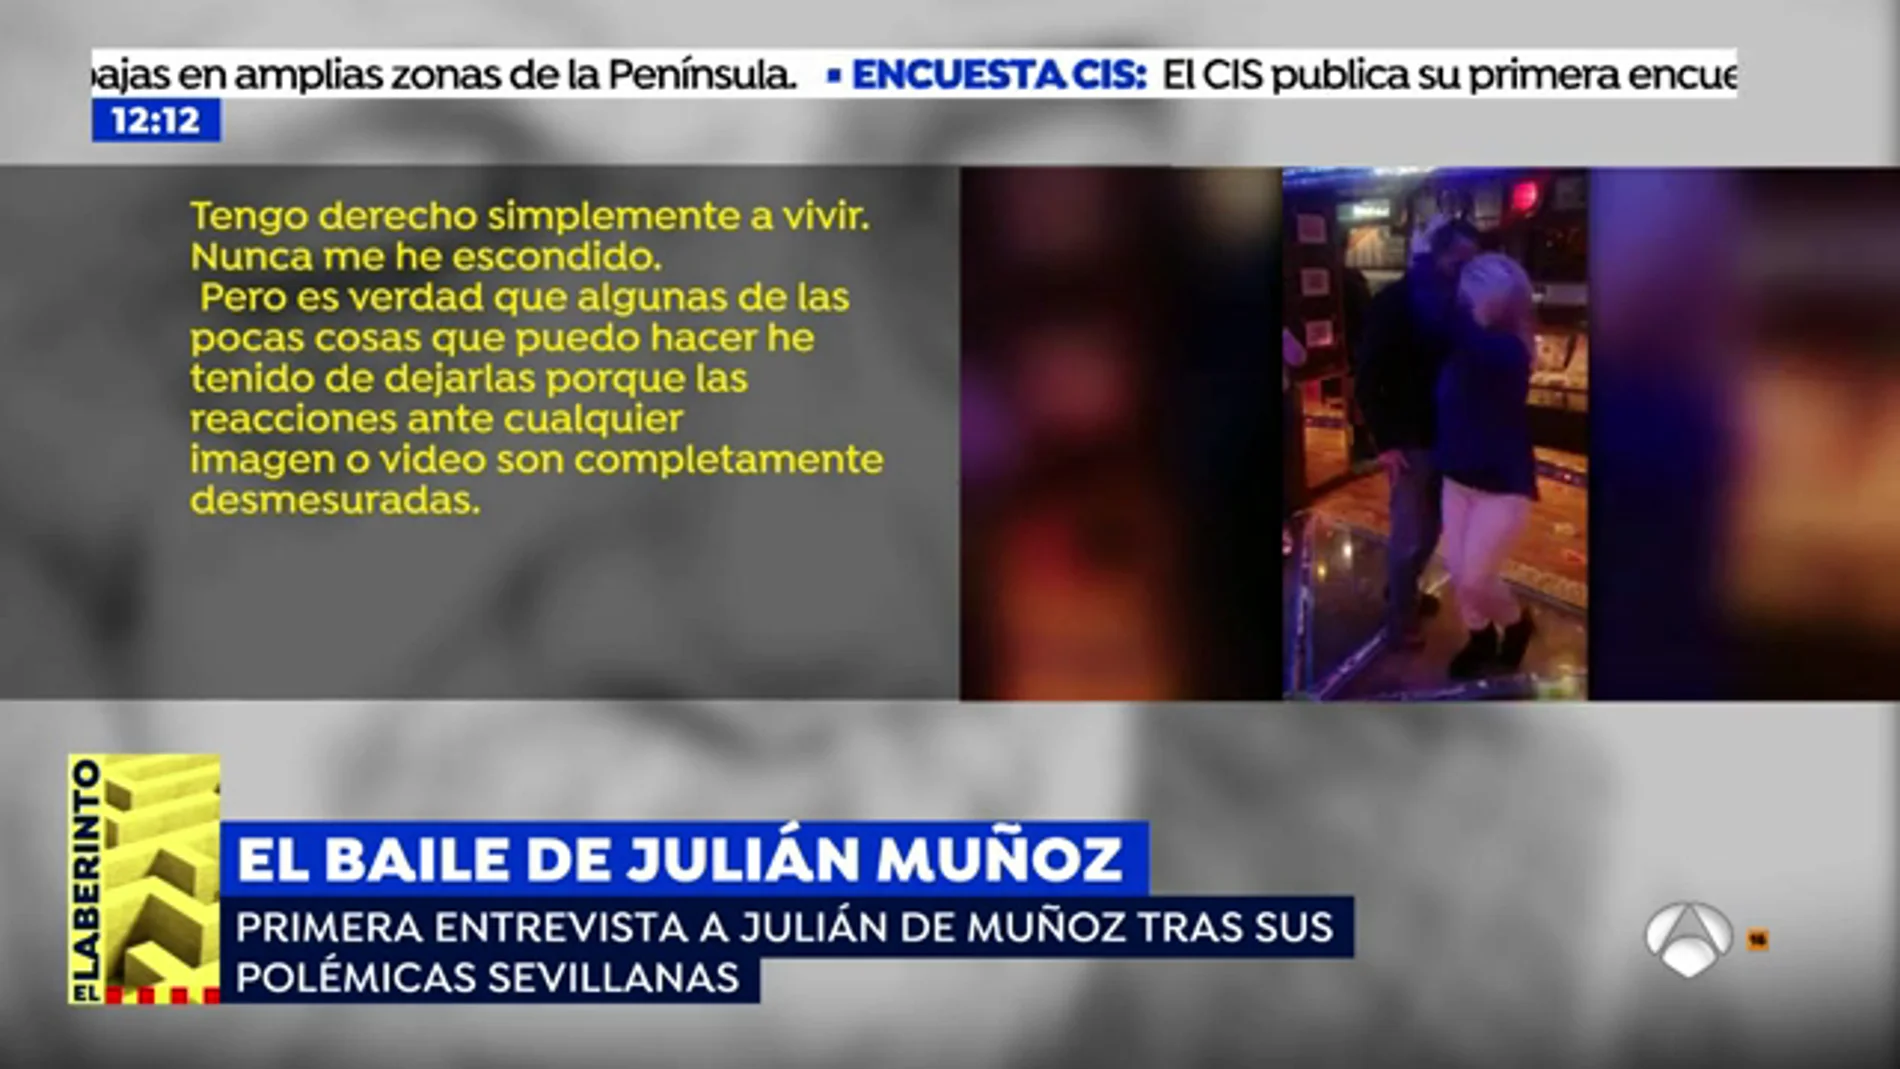 La primera entrevista a Julián Muñoz tras su polémico baile: “Mi pronóstico de vida es corto, mis enfermedades incurables”